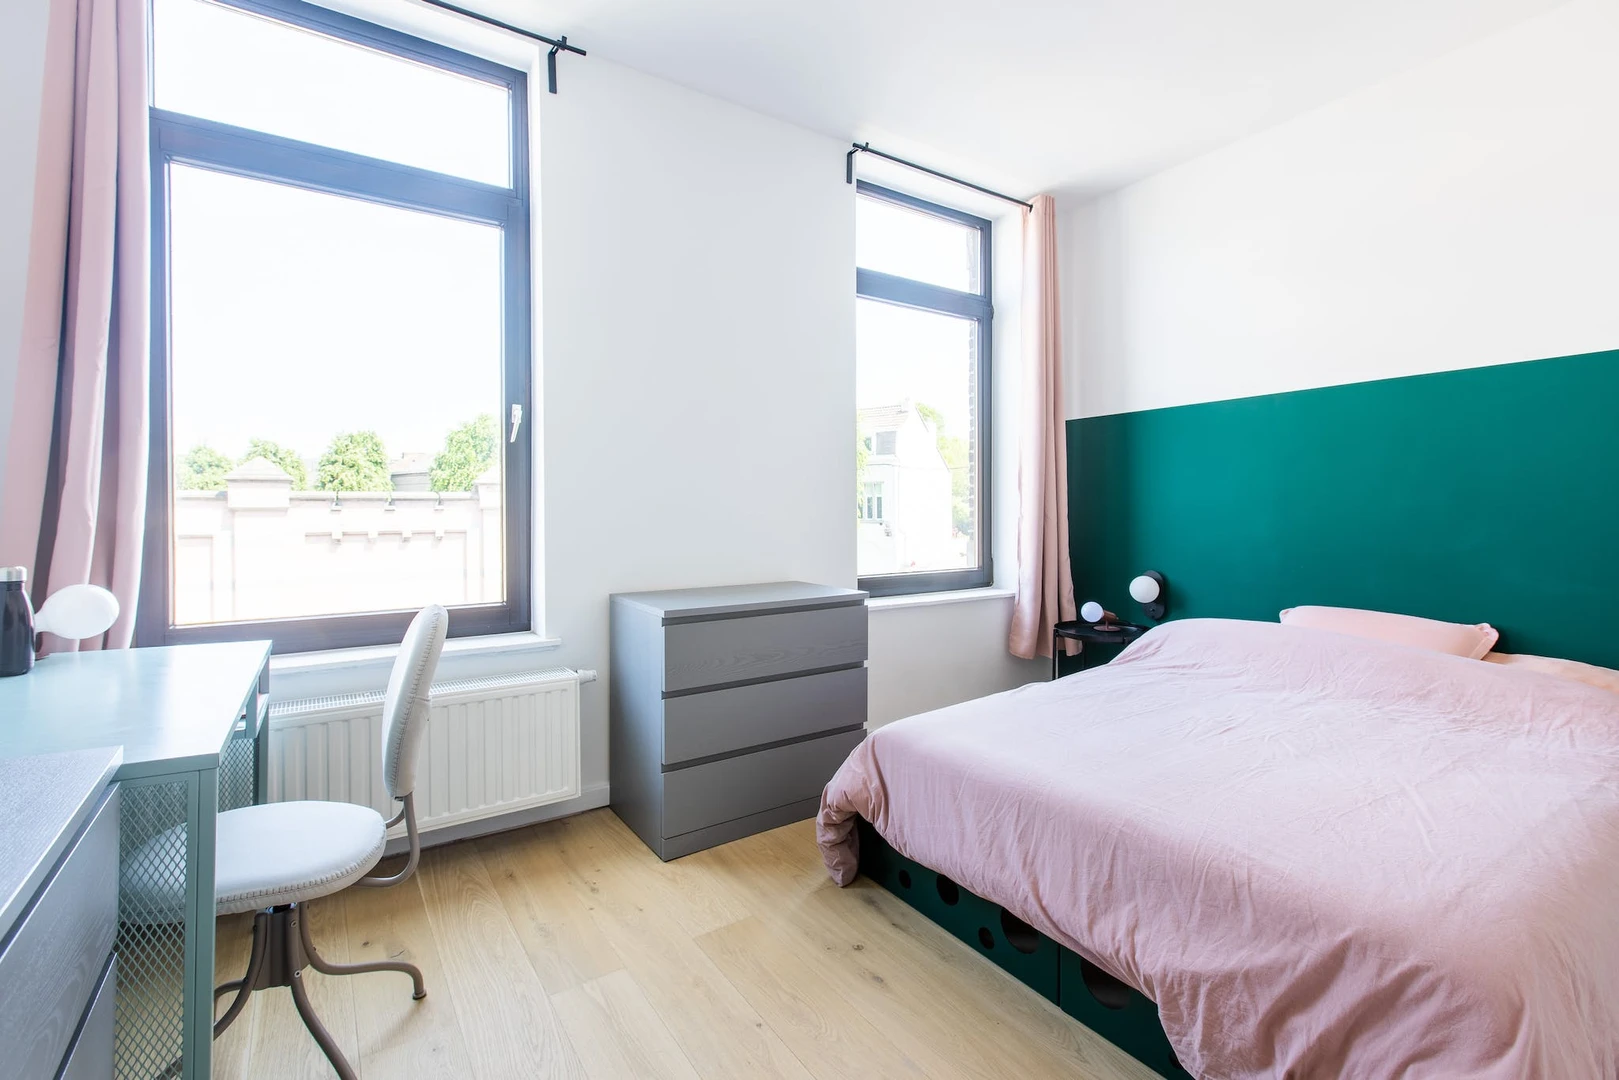 Alquiler de habitación en piso compartido en Mons